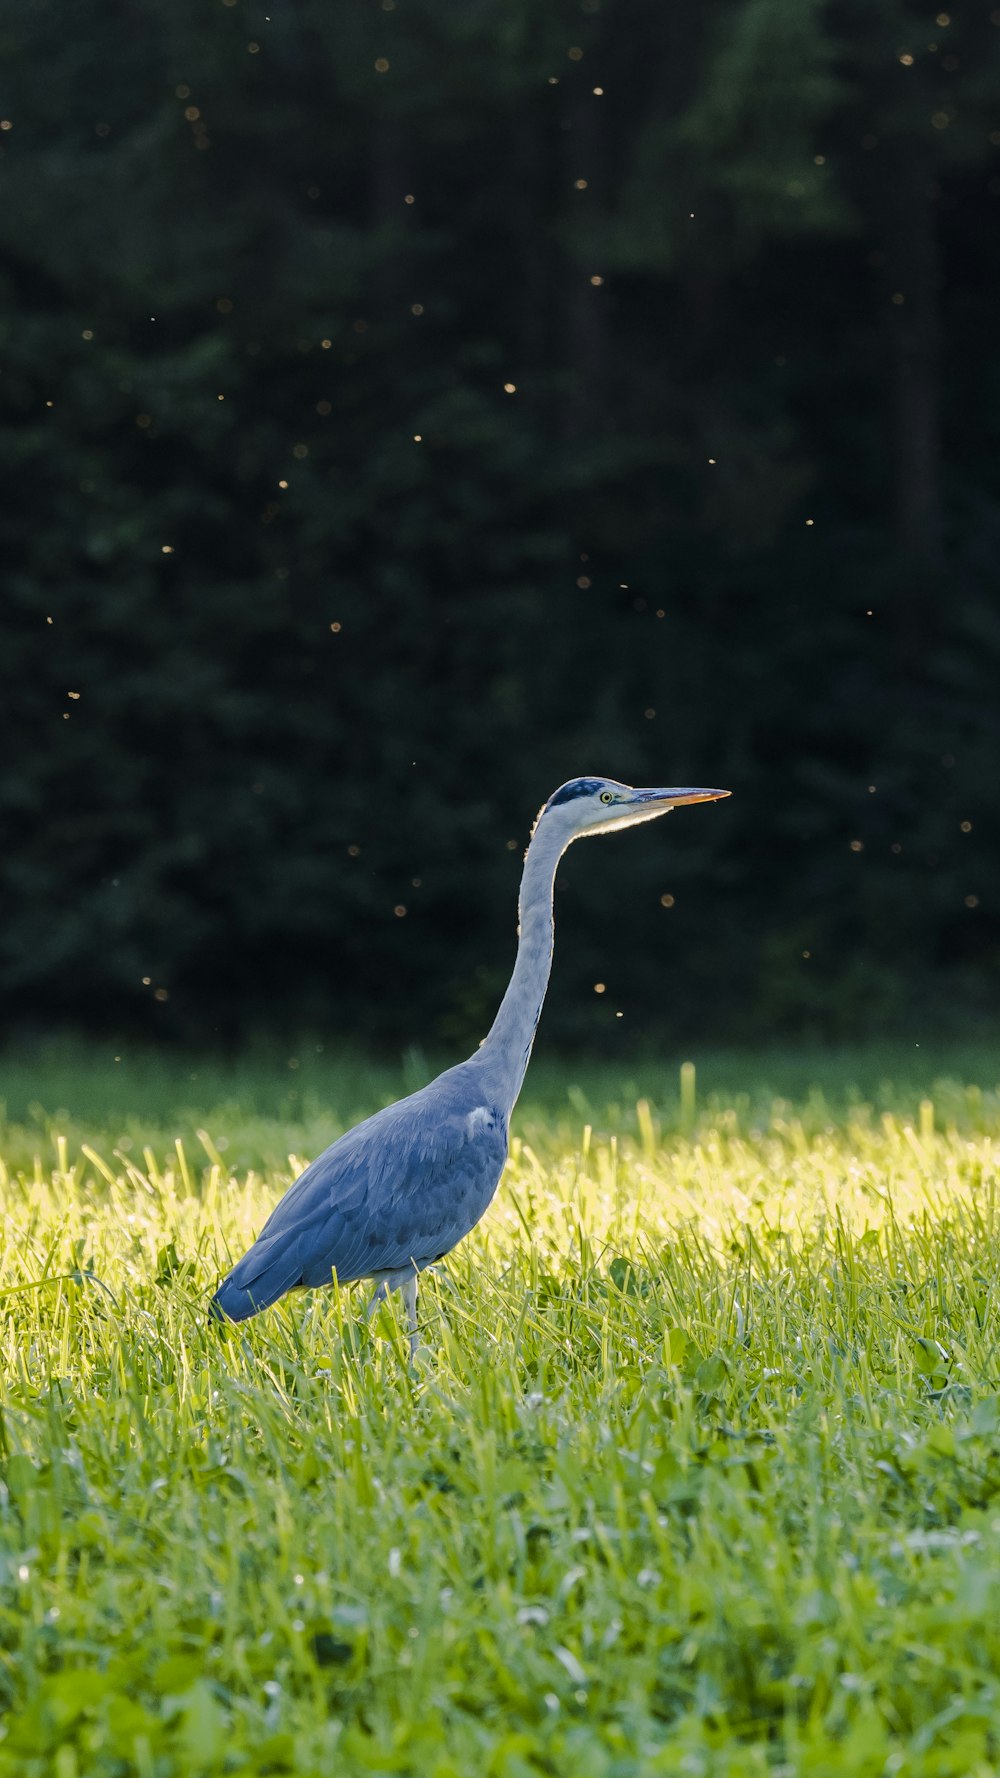 blue long beak bird on green grass field